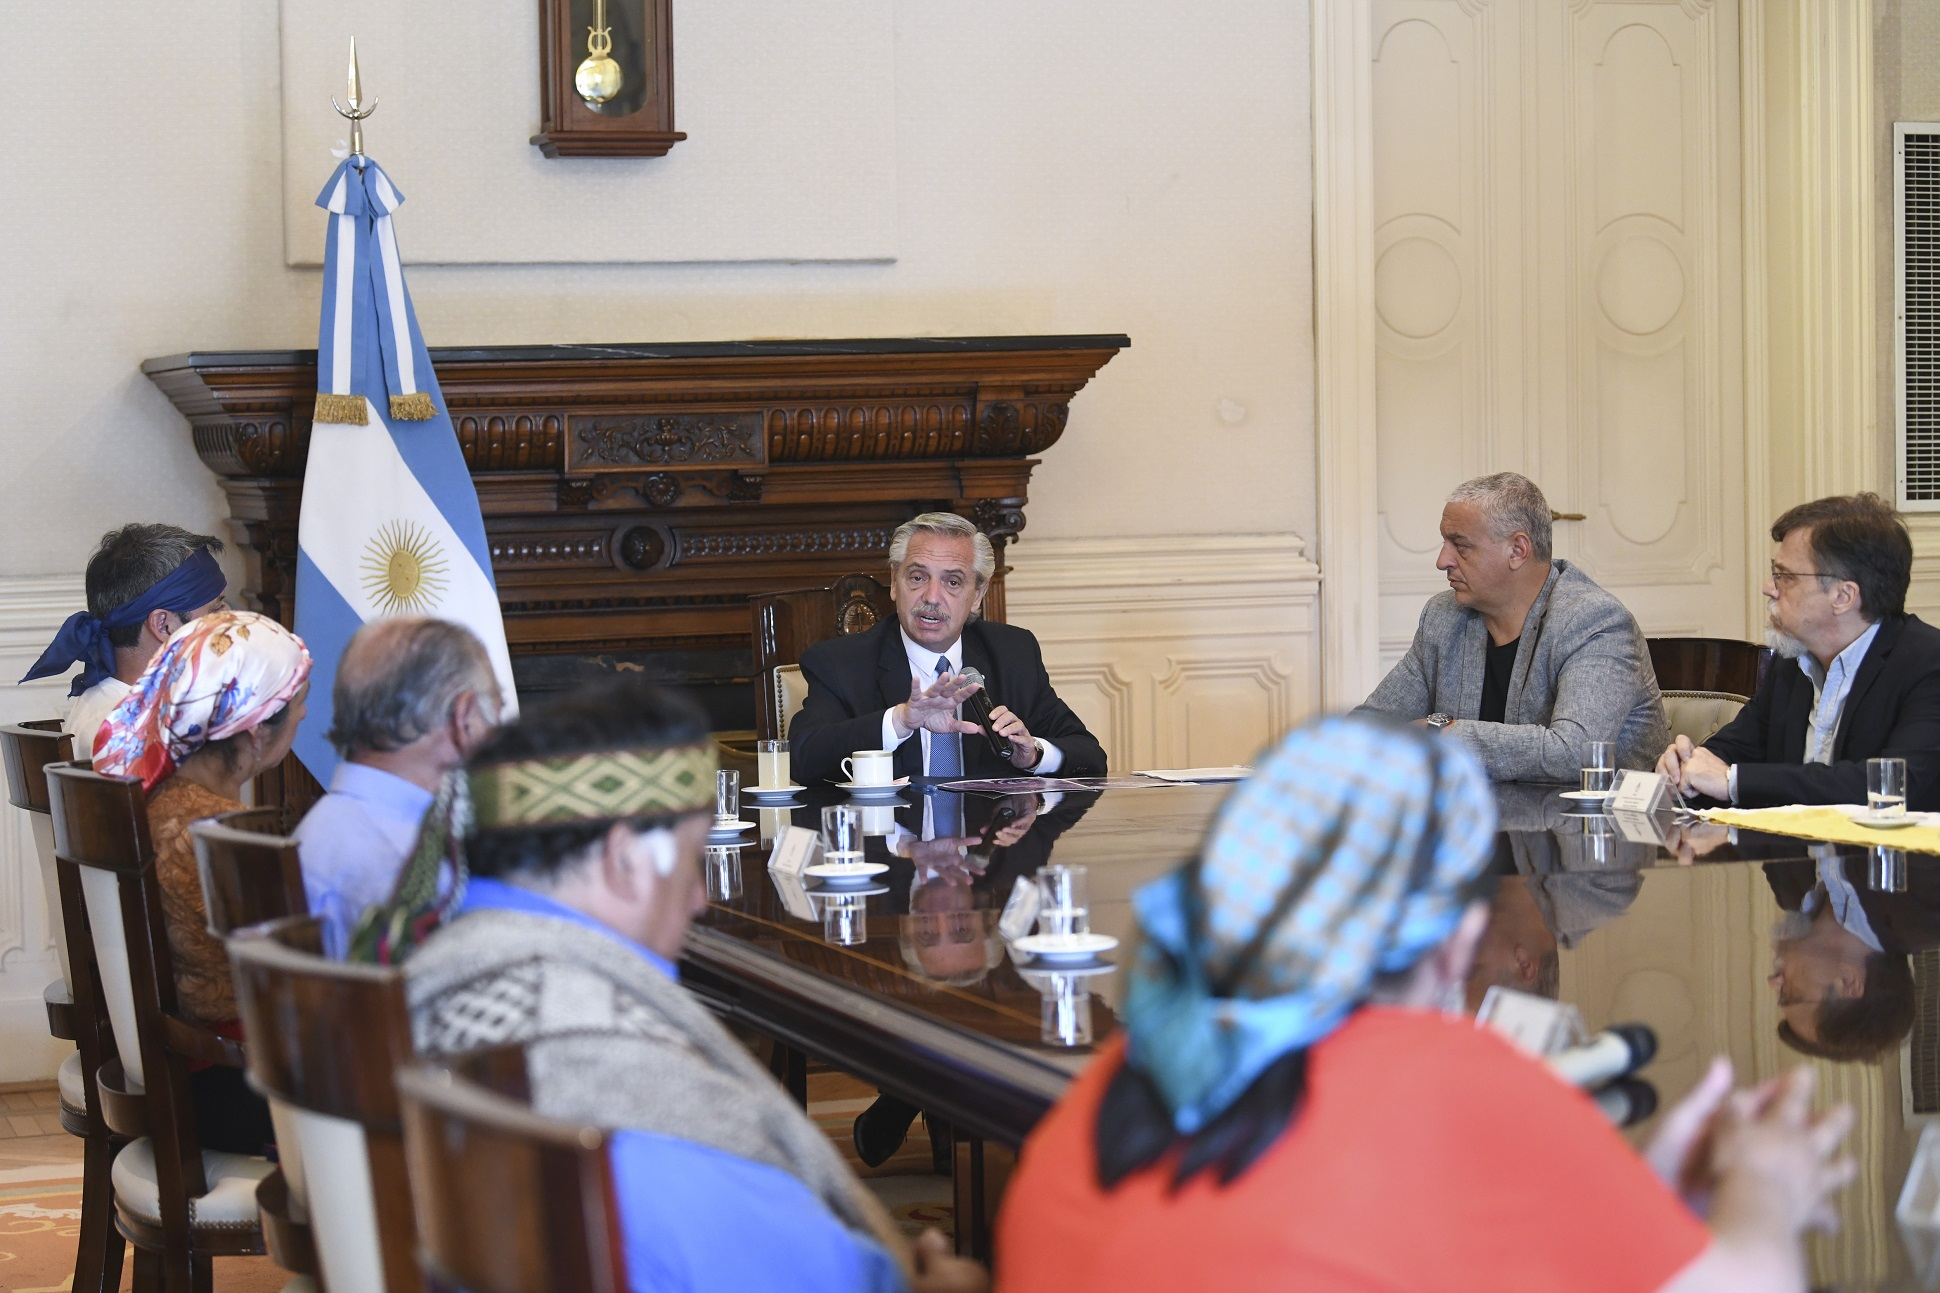 Ayer a la tarde 14 integrantes de la comunidad Mapuche fueron recibidos por el Jefe de Estado. Le pidieron una solución por las tierras “ancestrales” que reclaman en la zona de Villa Mascardi, que se disuelva el “comando de fuerza federales” instalado en el lugar y por la libertad de las tres mujeres detenidas Crédito: Presidencia de la Nación